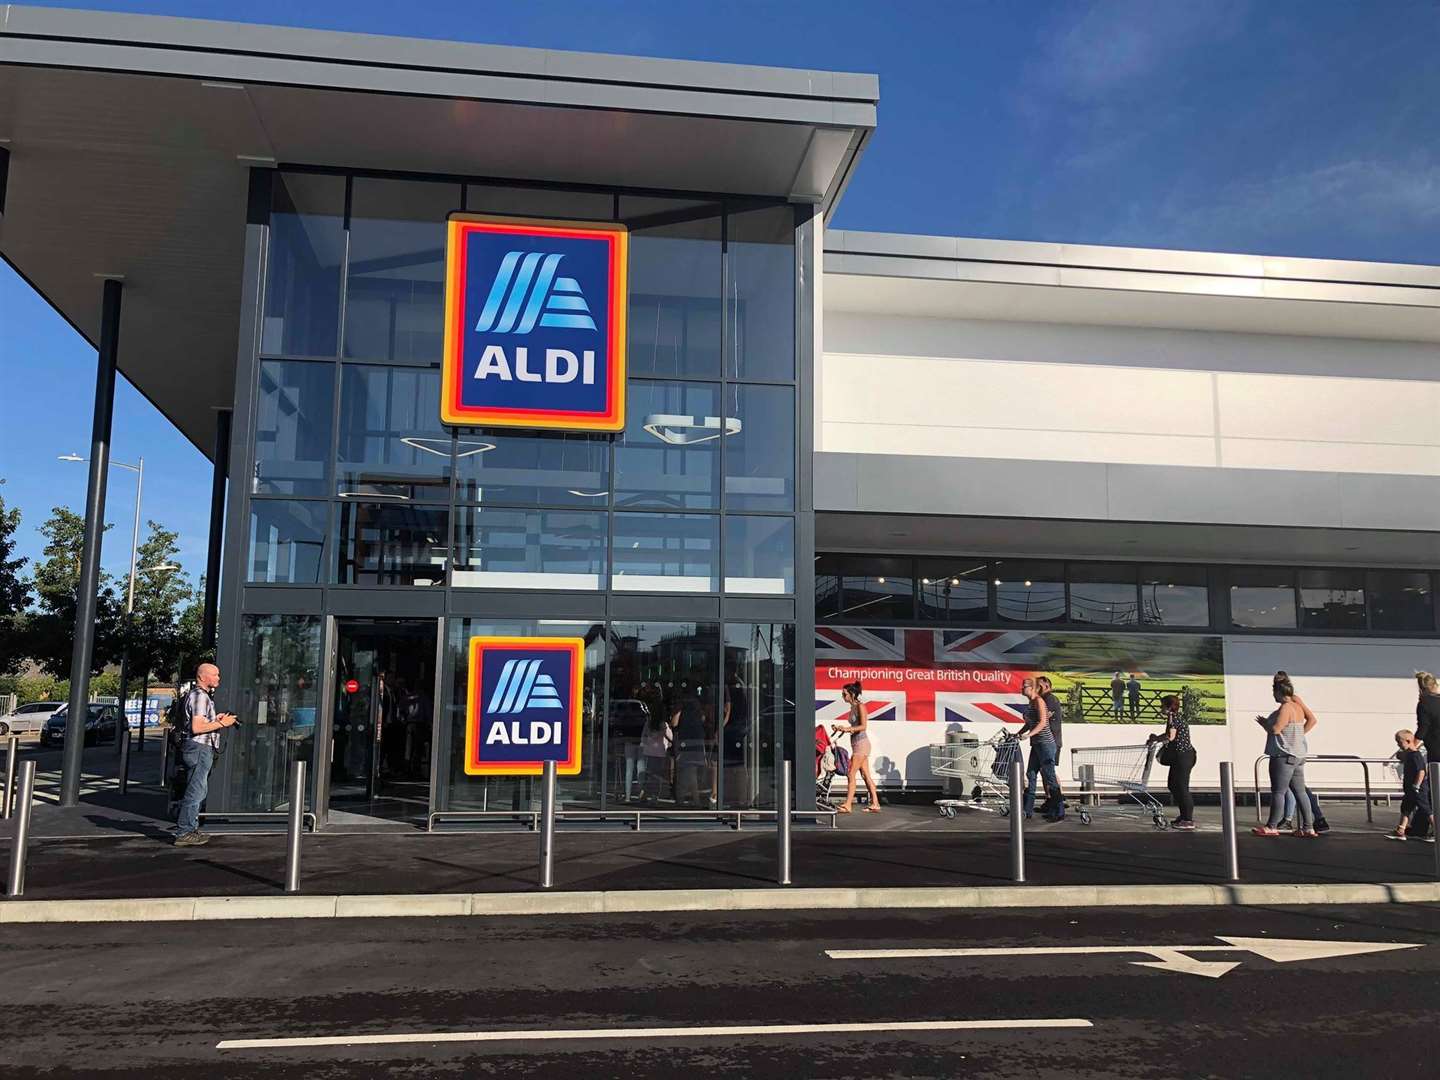 Aldi in Ashford opened in August 2018 in Victoria Road